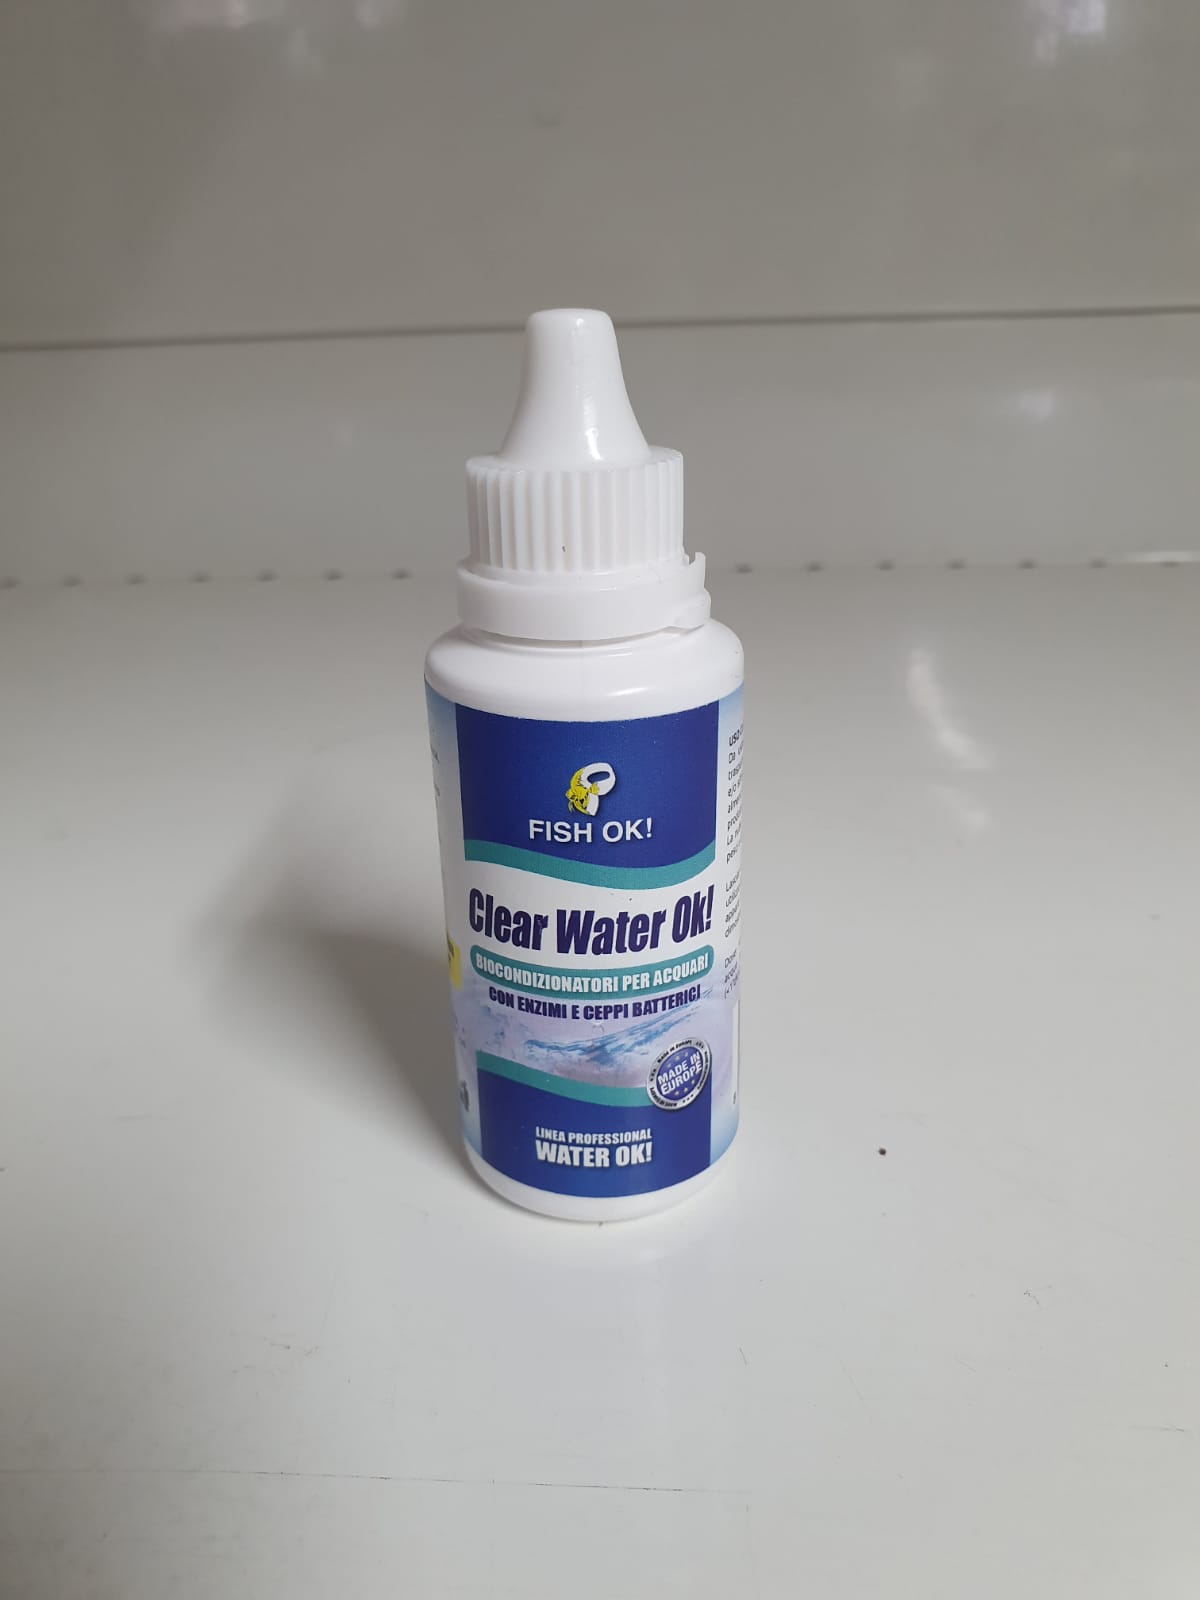 Clear water ok! Biocondizionatori per acquari con enzimi e Ceppi batterici 50ml